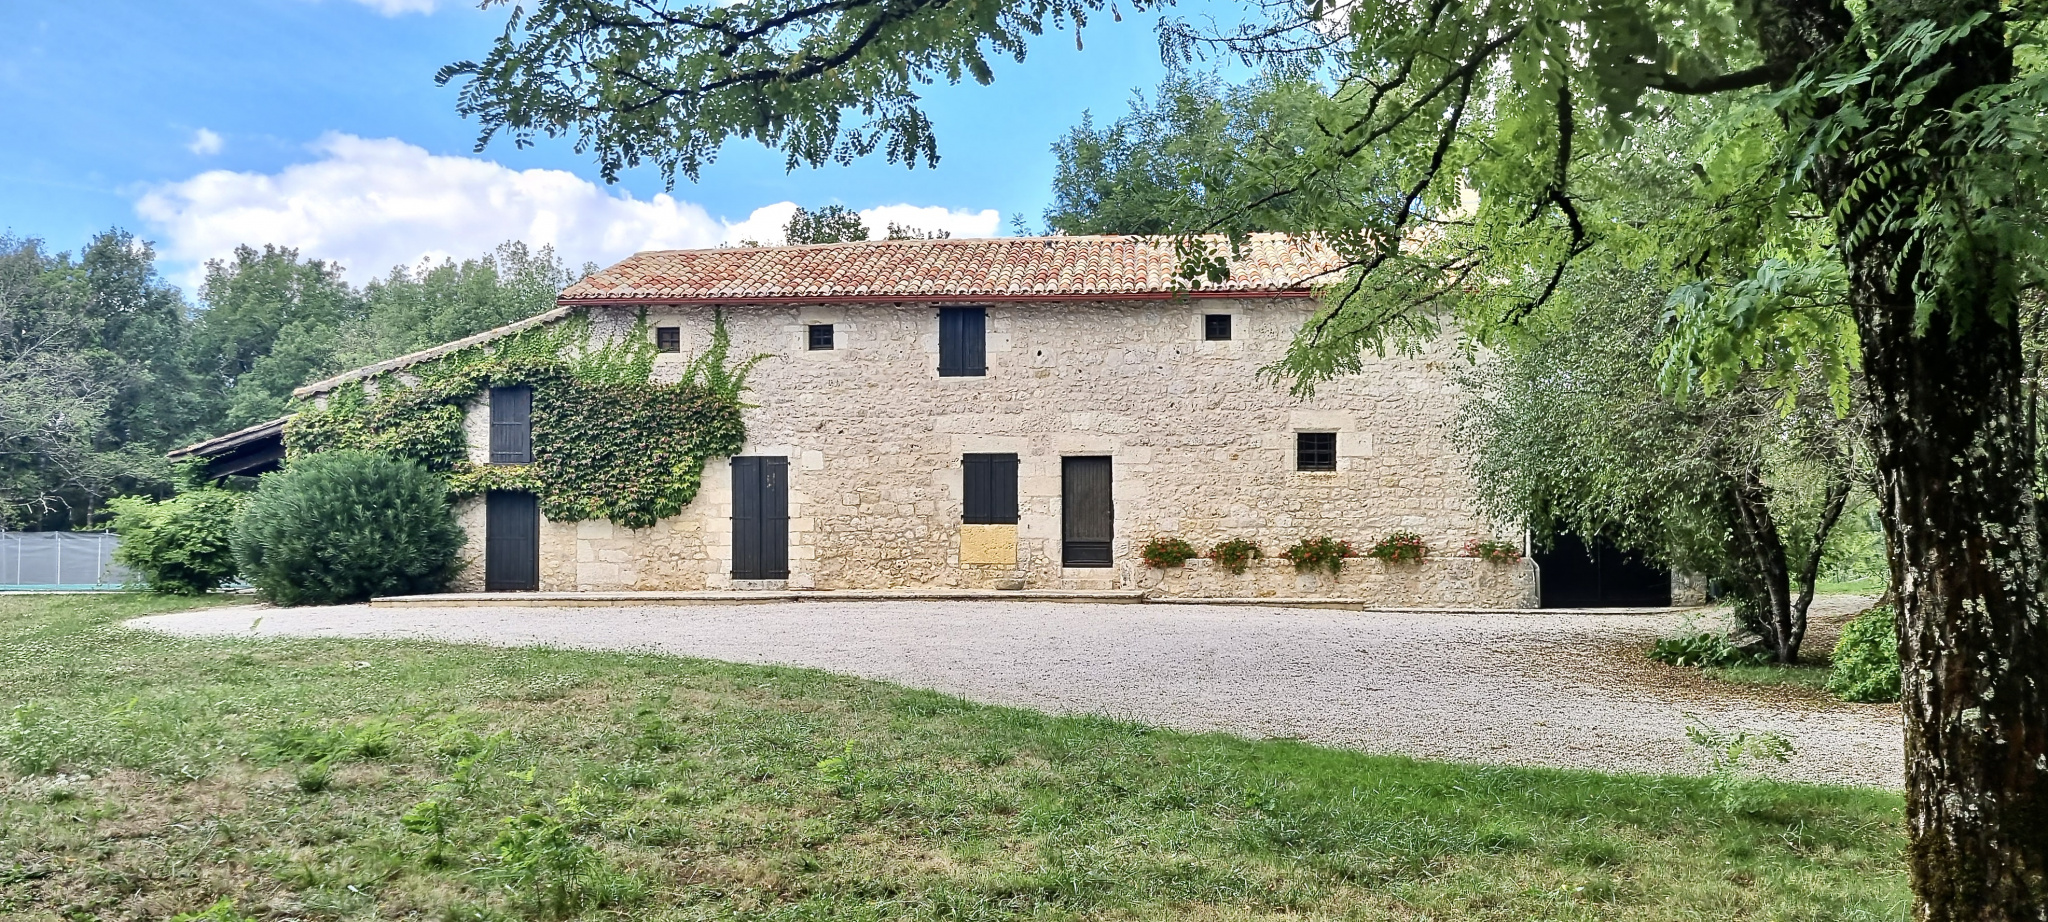 Charmante maison en pierre au milieu de la nature dans le Lot et Garonne